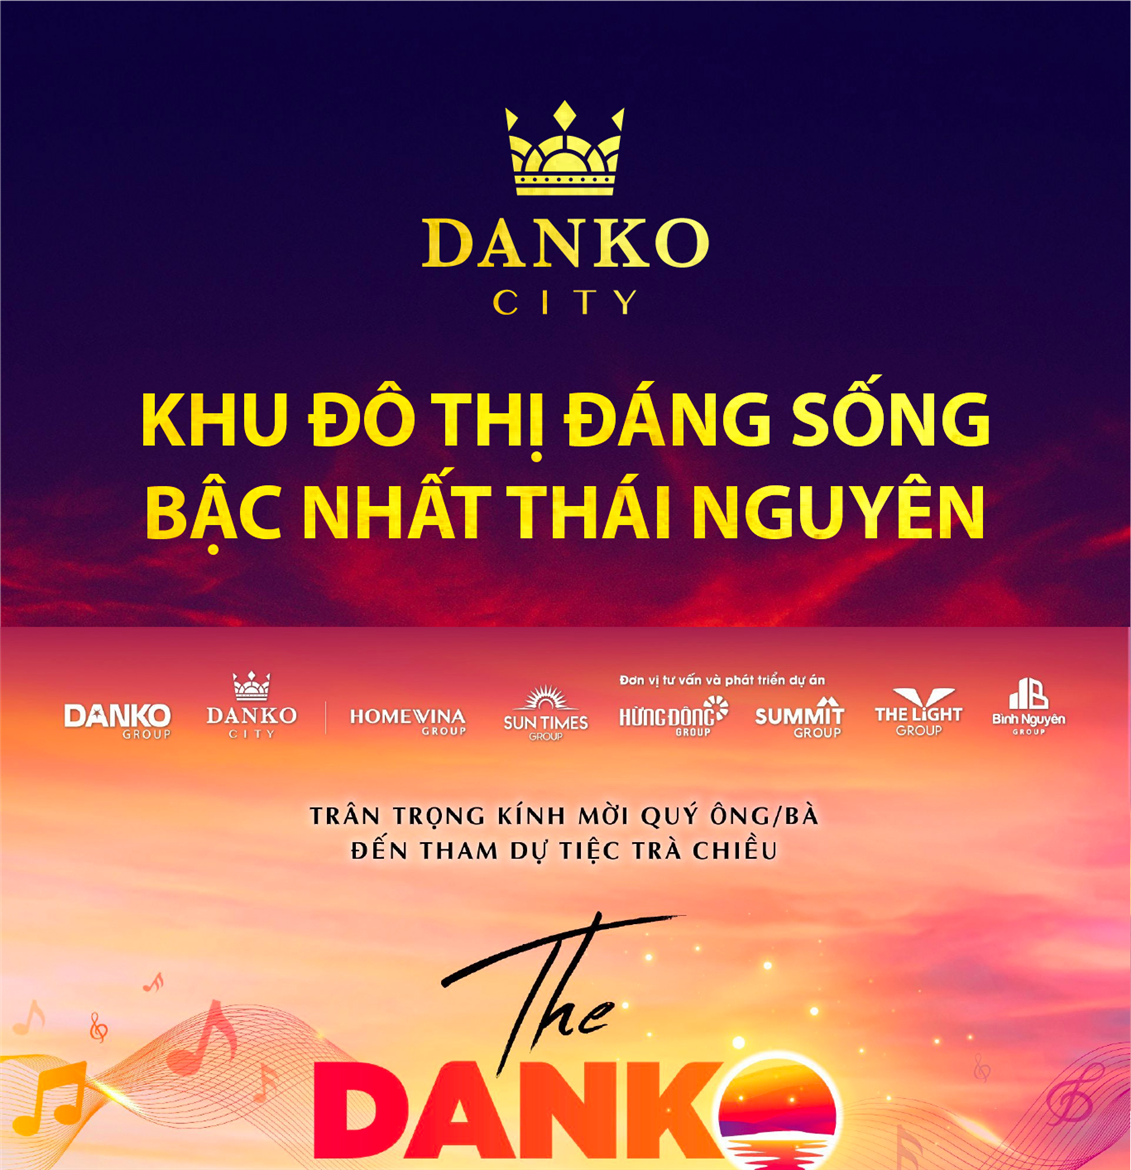 Tiến độ dự án Danko City Thái Nguyên - Ngày 8/10/2021